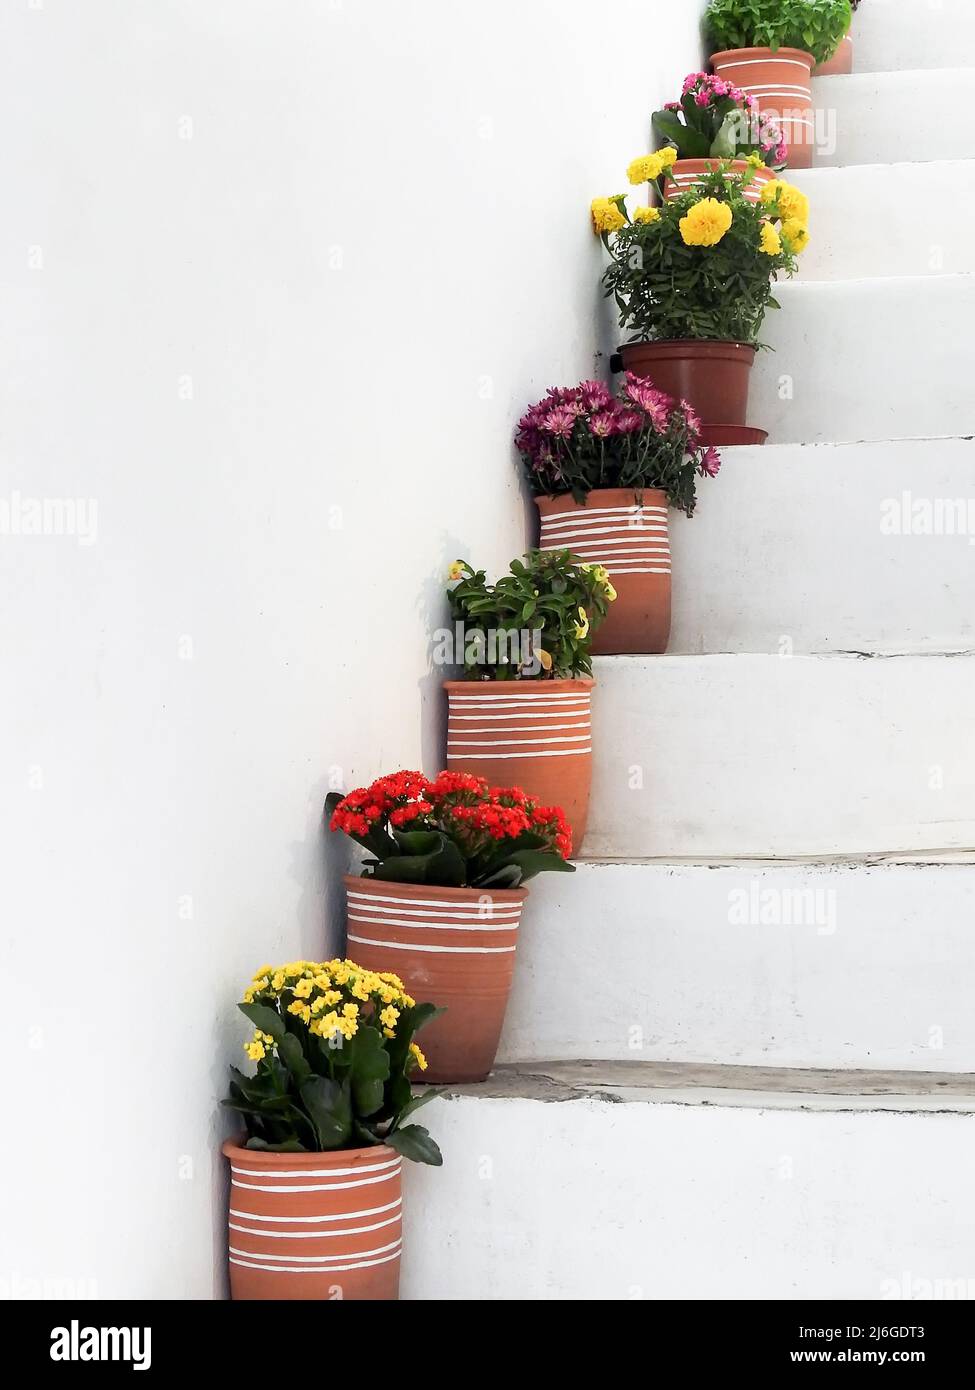 Flower pots on steps Stock Photo - Alamy